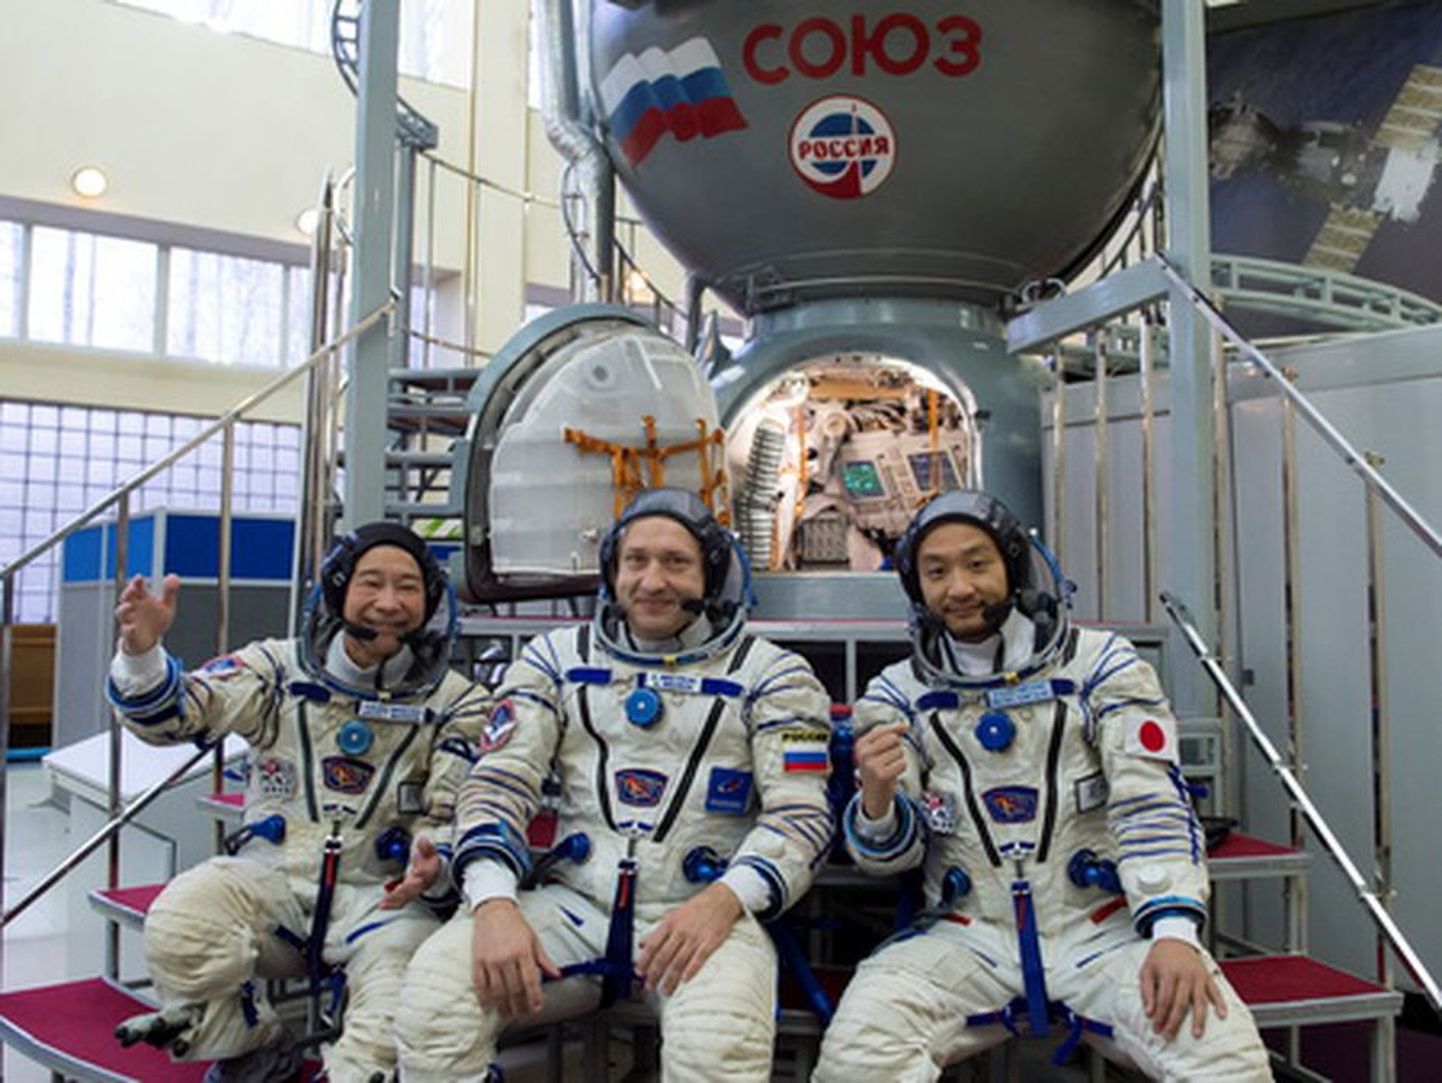 Venemaa kosmonaut Alaksandr Misurkin (keskel) koos jaapanlaste, miljardäri Yusako Maezawa (vasakul) ja tema abilise Yozo Hiranoga 16. novembril Venemaa kosmonautide treeningkeskuses